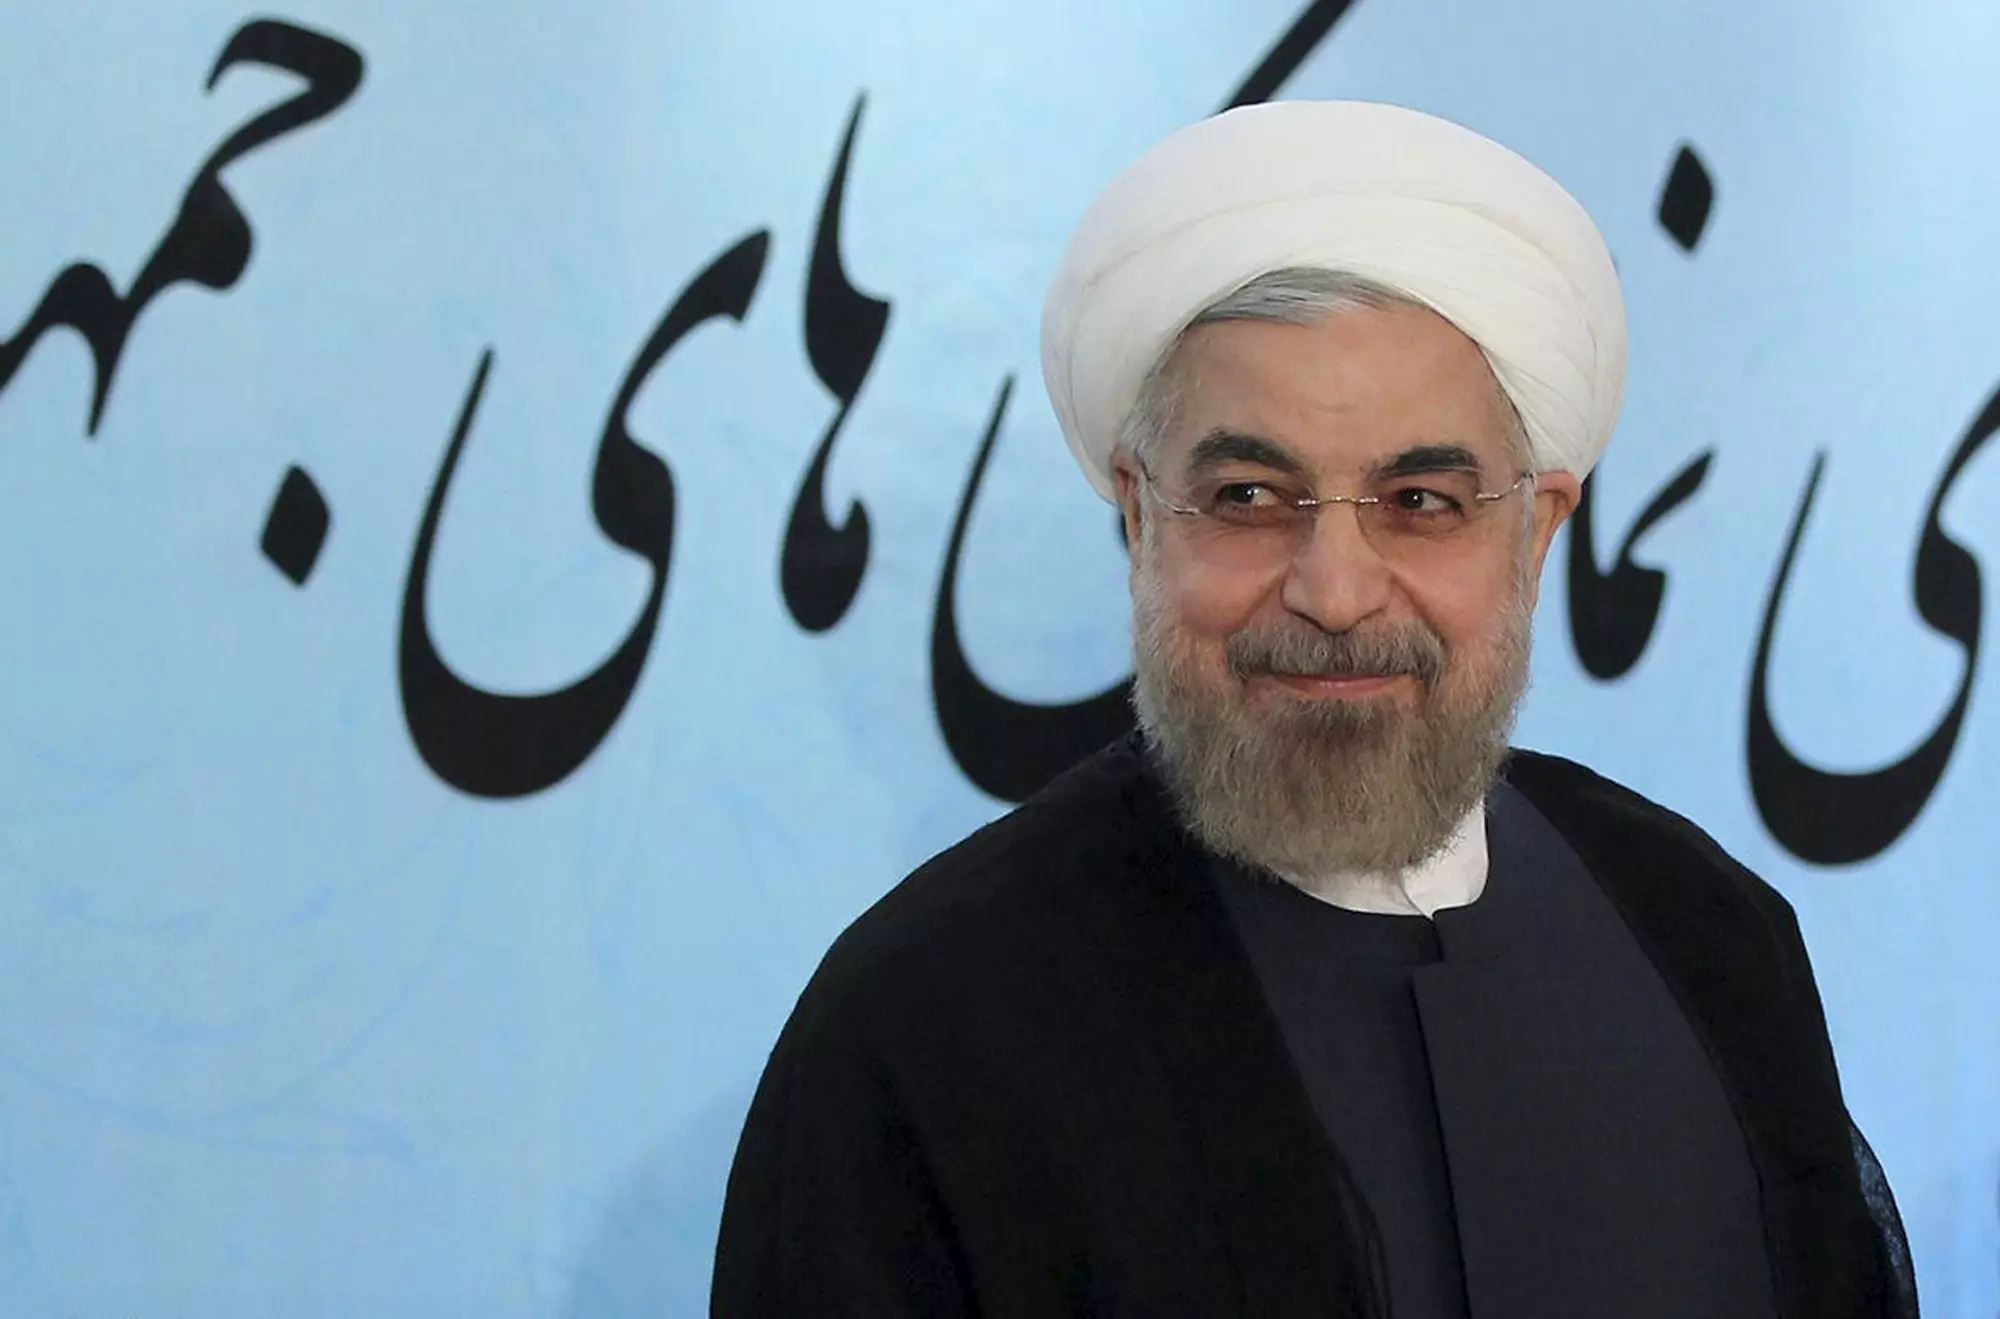 "יש עוד חודשיים להגיע להסכמות על הגרעין". נשיא איראן, חסן רוחאני